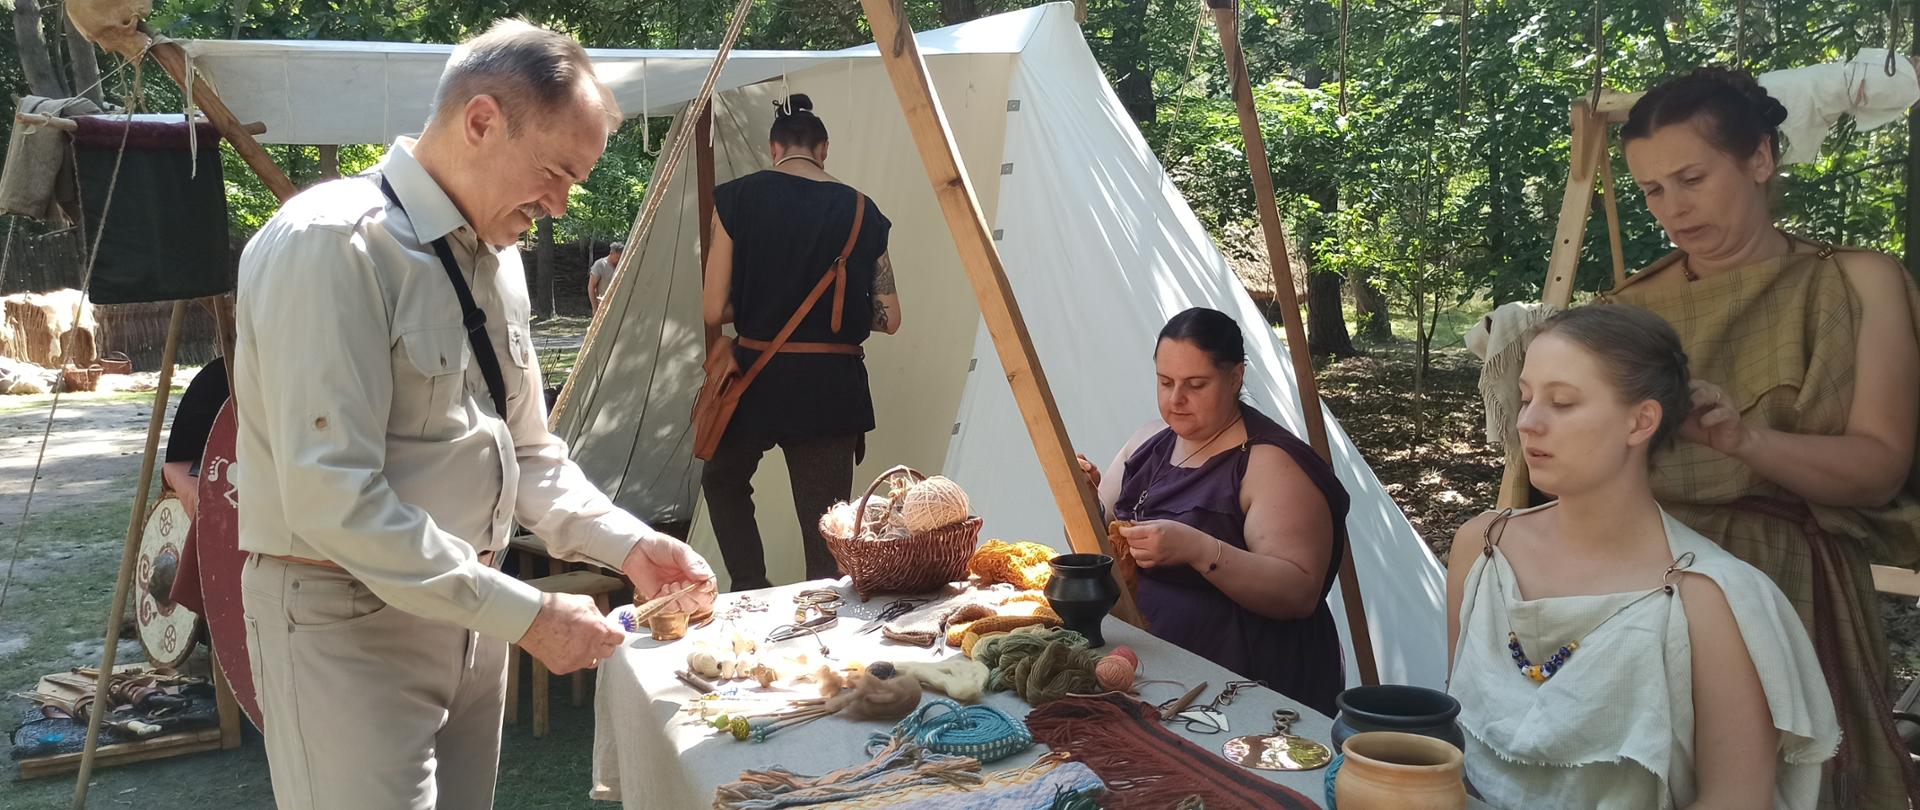 III Ostrowiecki Festiwal Kultury Prehistorycznej i Antycznej przeszedł do historii